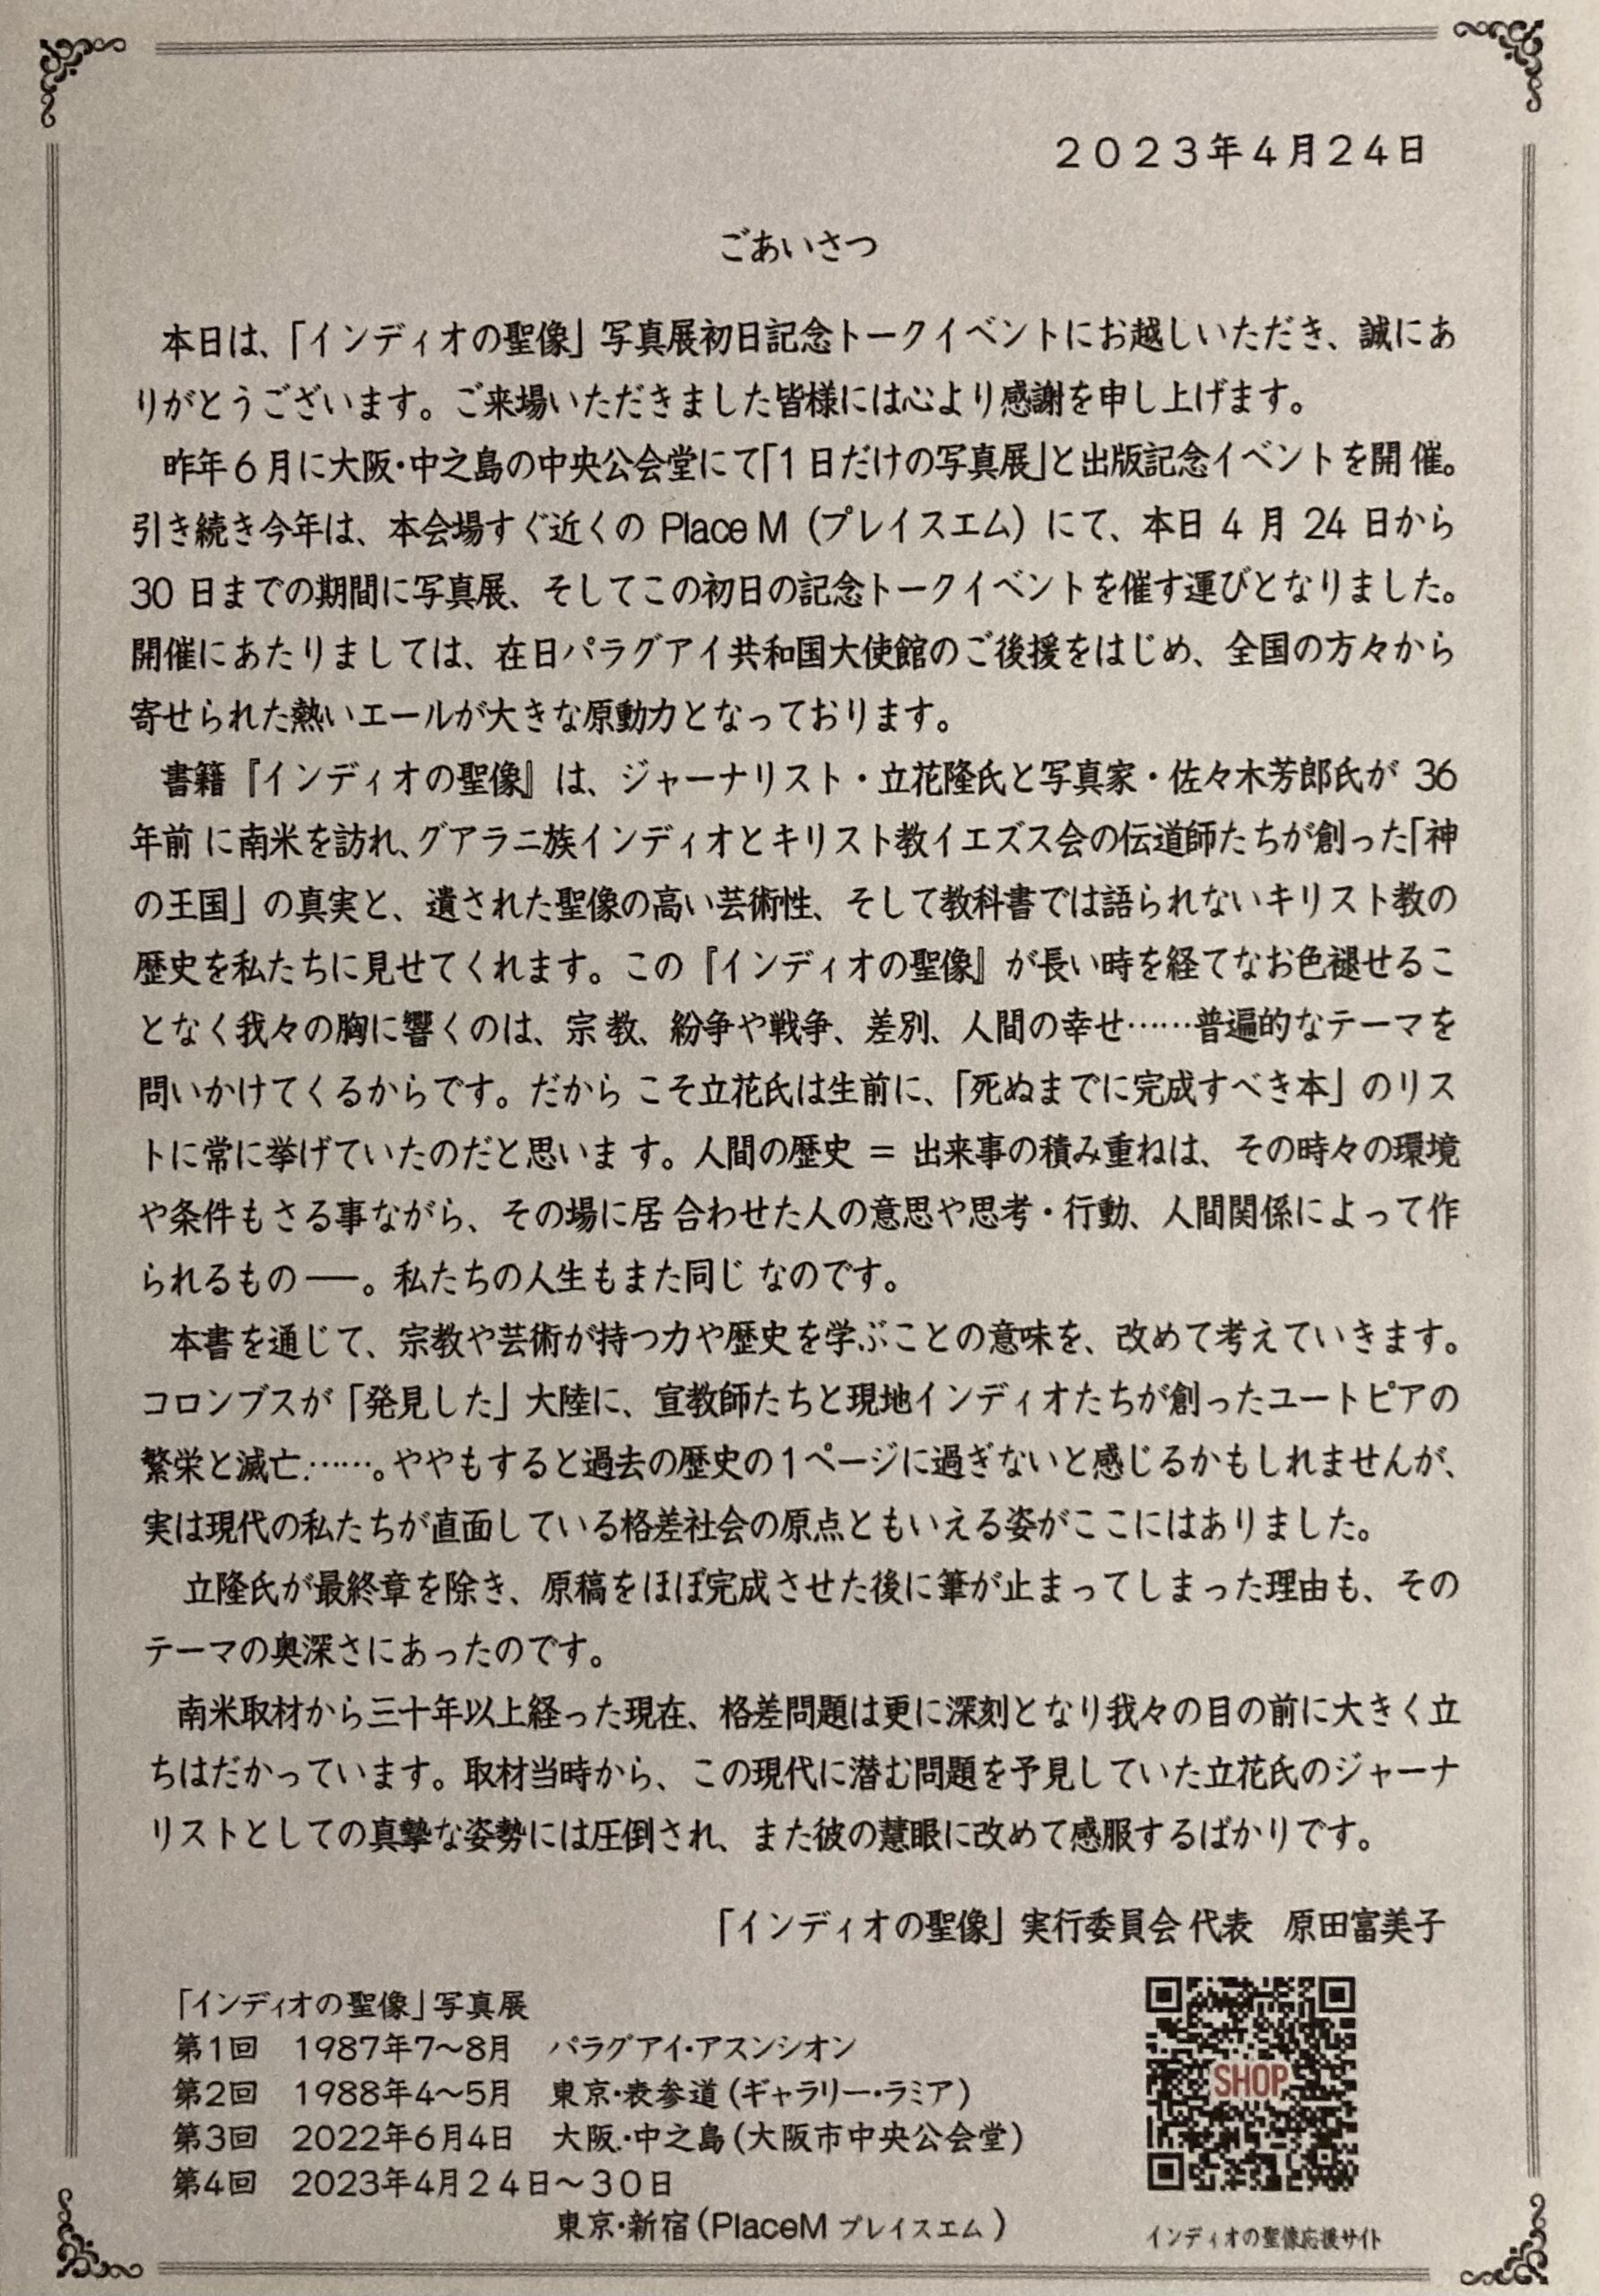 写真展の初日の記念トークイベントで配付されたリーフレットに挟まれた原田実行委員長の挨拶文。